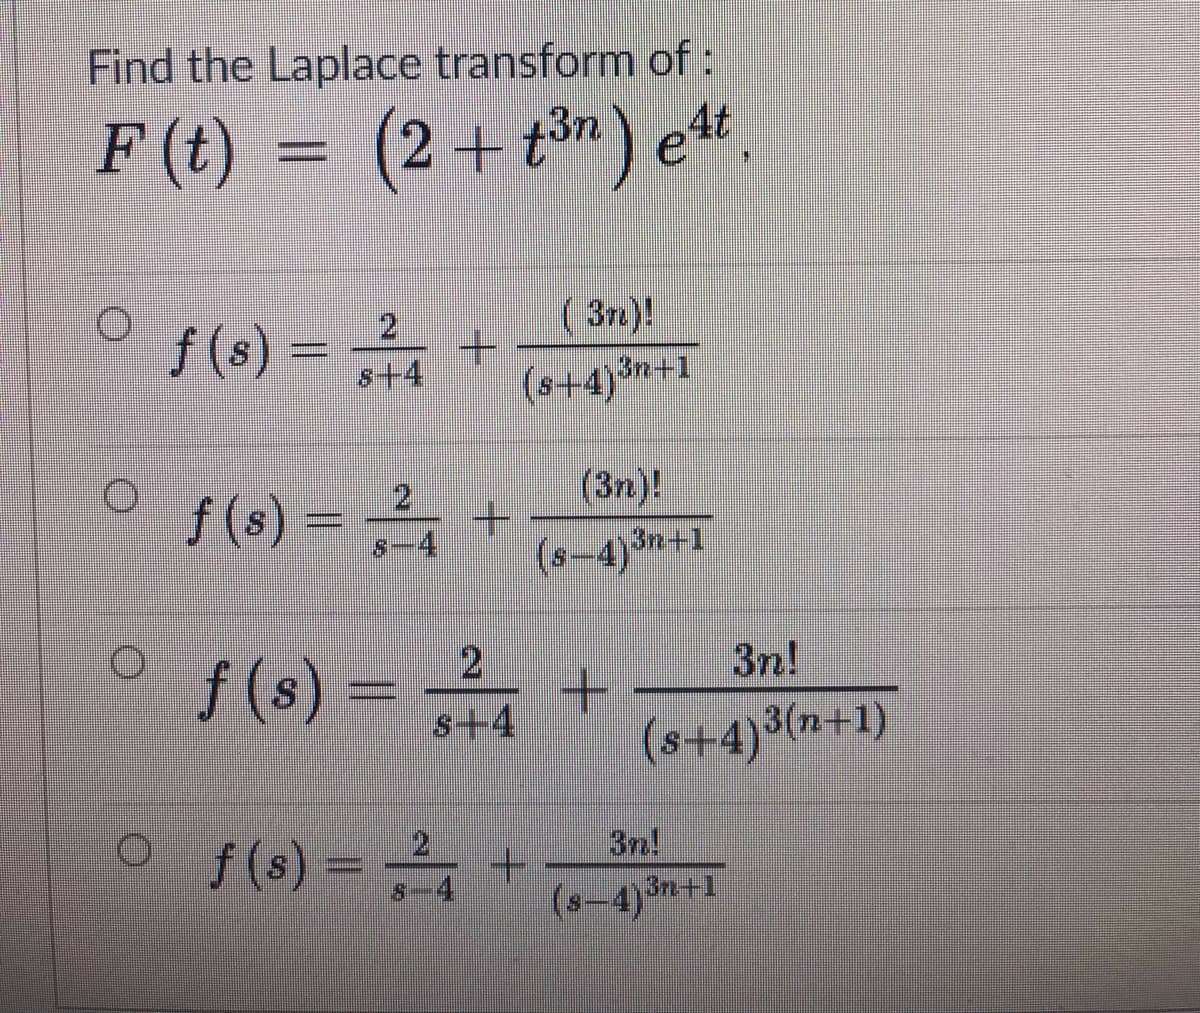 Find the Laplace transform of:
F (t) = (2+t) e".
f (s) =
( 3n.)!
- +
(s+4)*
s+4
(s+4)+1
f (s) =
21
-4
(3n)!
(s-4)3n+1
/(s) - +
3n!
s+4
(s+4)³(n+1)
o(s) = +
3n!
(s-4)3n+1
